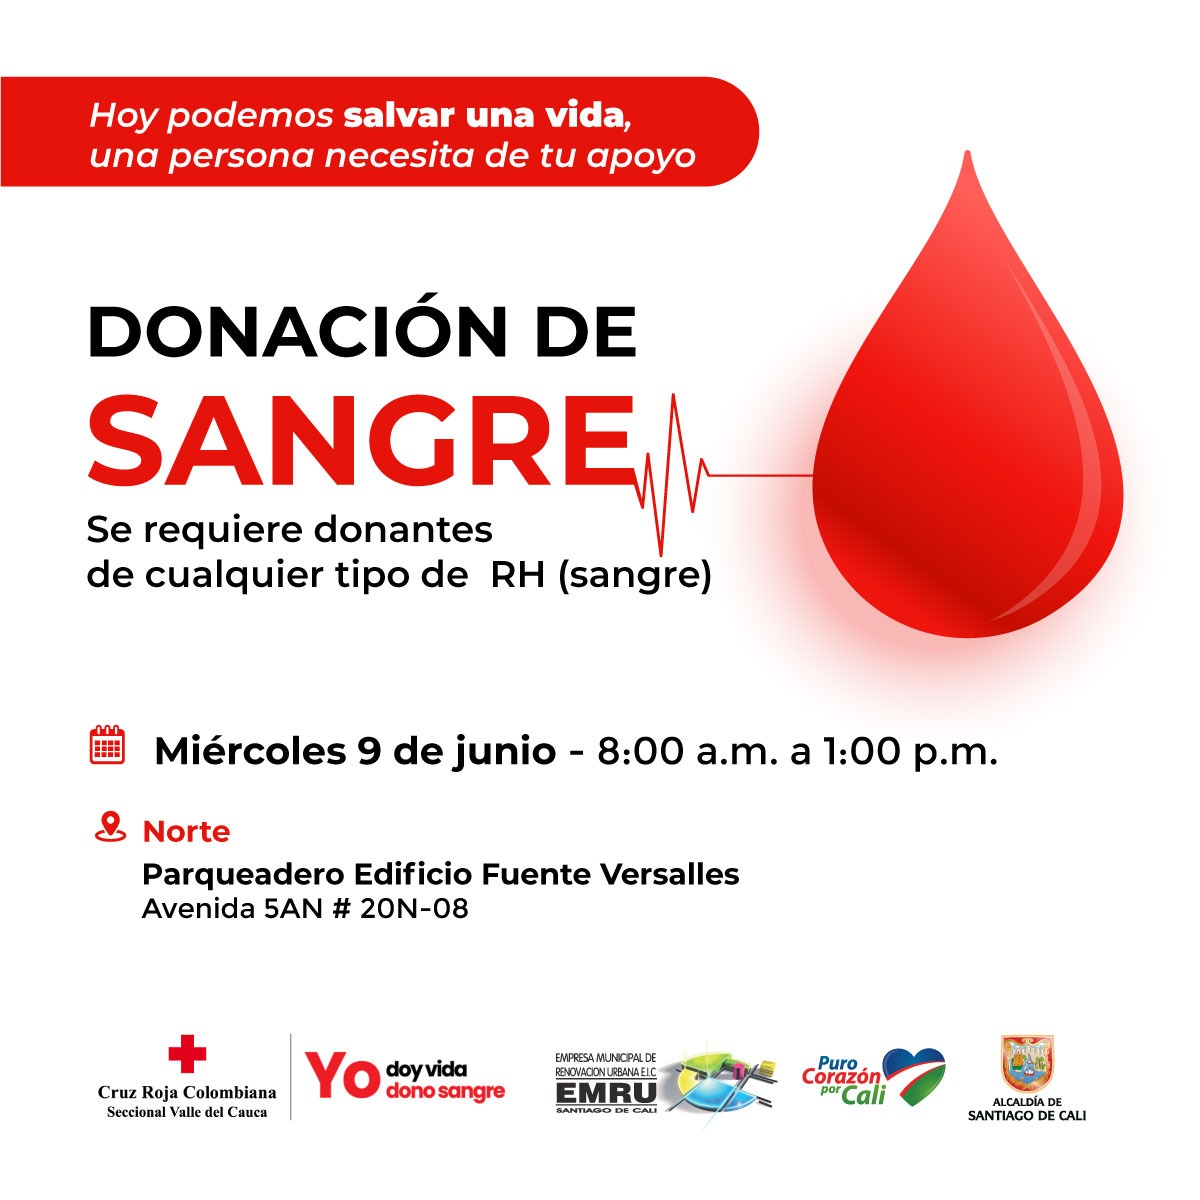 Jornada donación de sangre 9 de junio